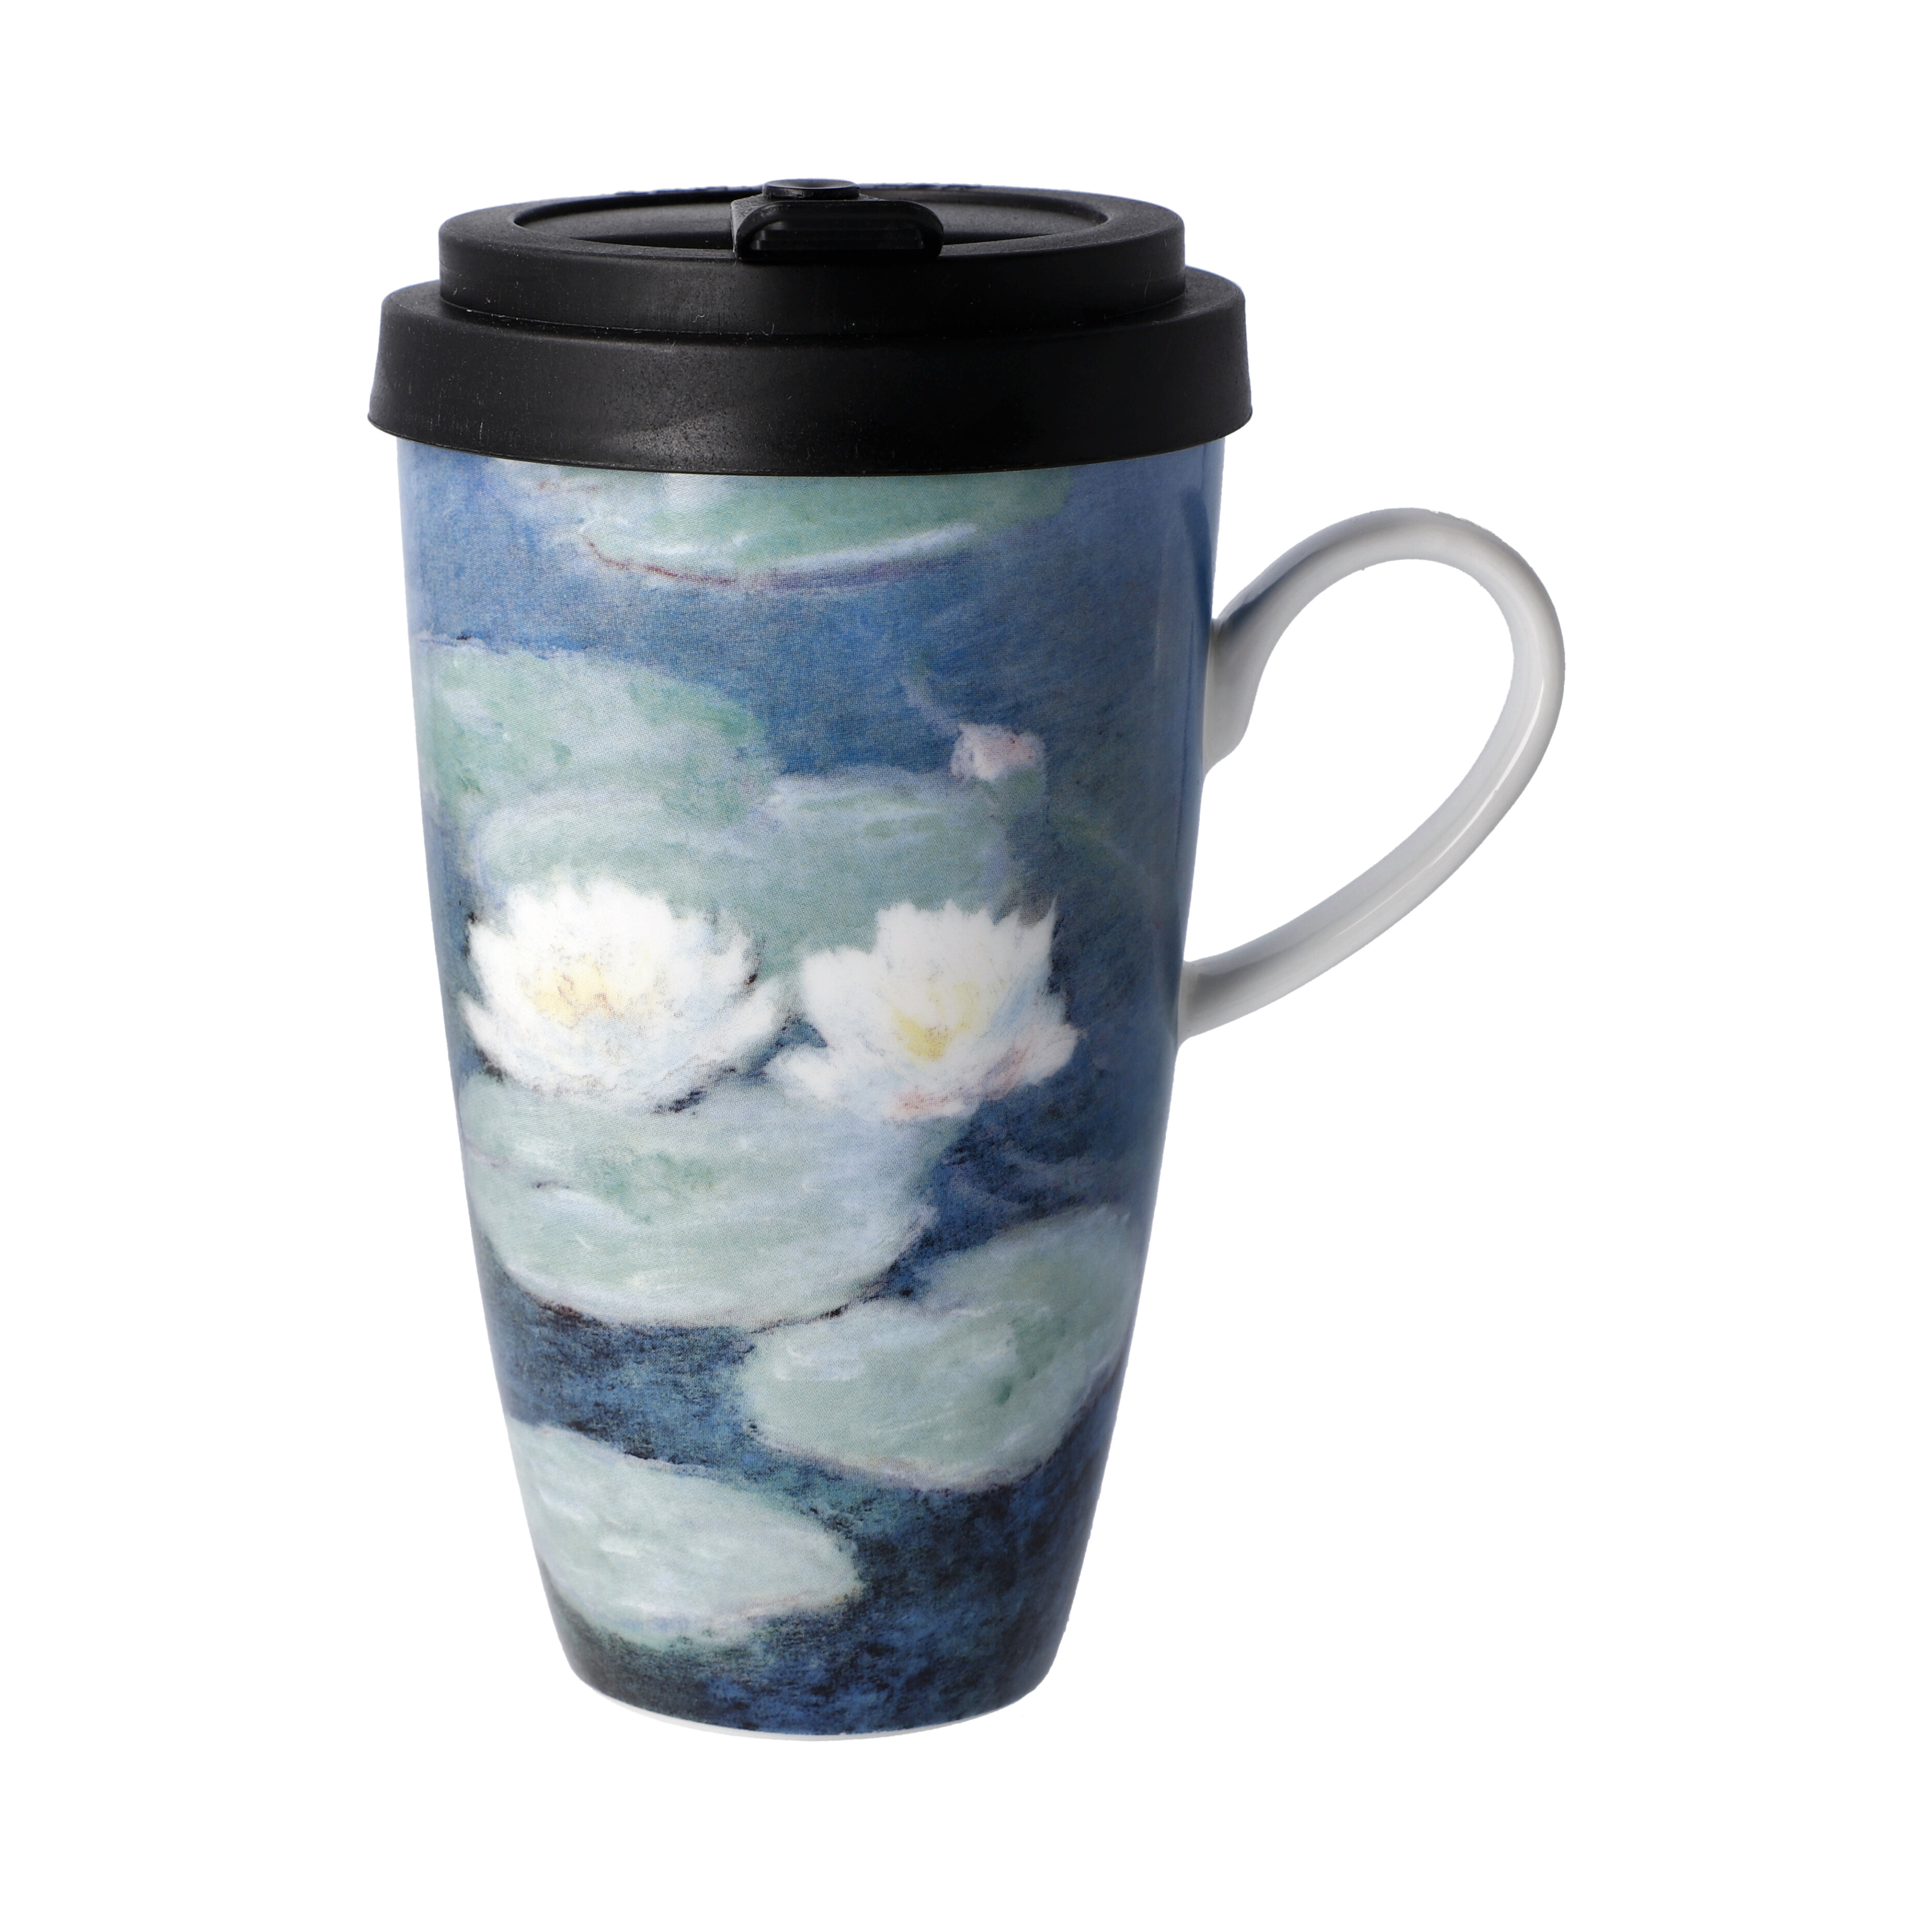 Evening Flowers - Mug To Go Artis Orbis Claude Monet